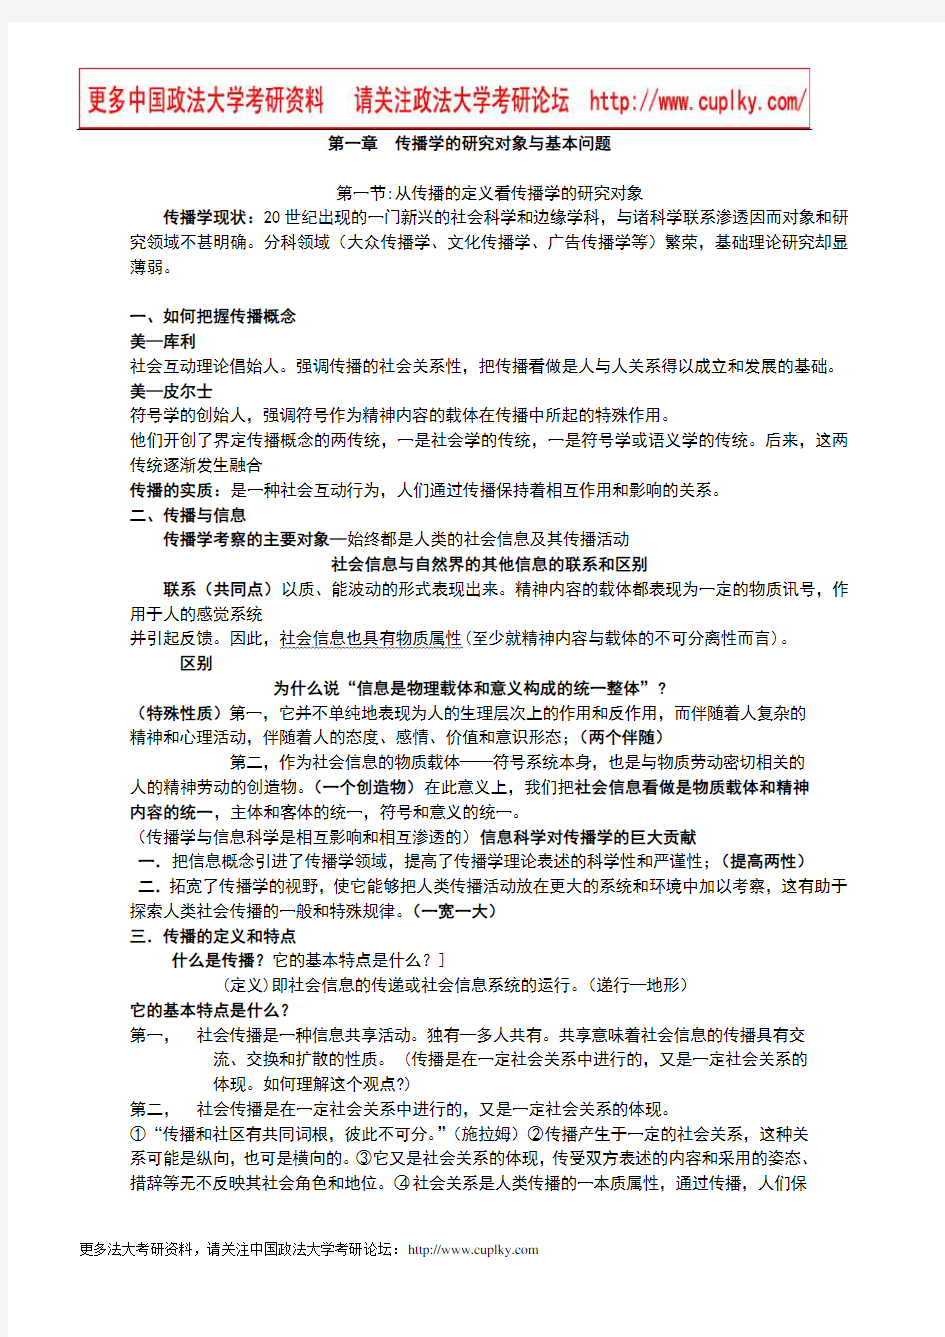 郭庆光传播学教程笔记详细版,课后习题答案